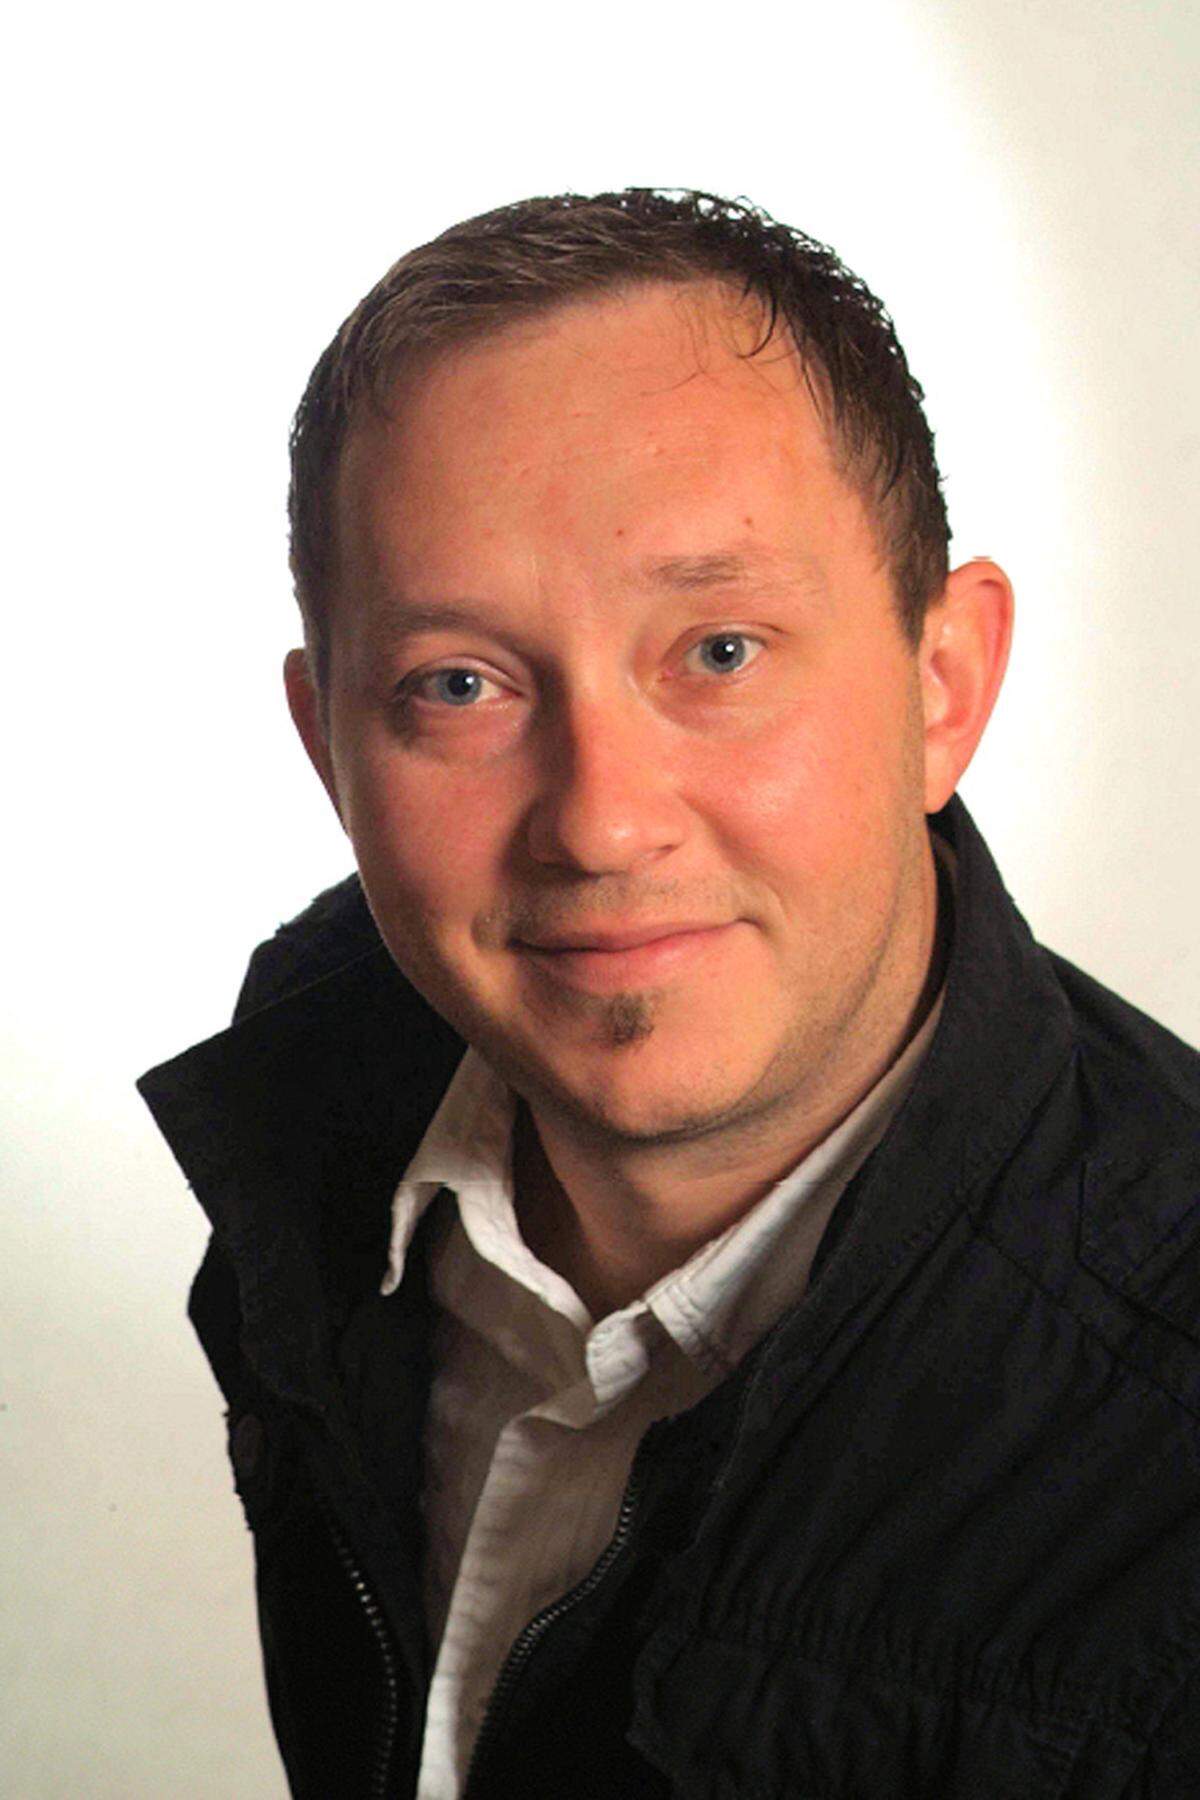 Mit Leonhard Tibitanzl tritt am 2. Juni 2014 ein weiterer Account Manager dem Team bei. Tibitanzl (36) war bereits von 2005-2008 für die Eurotax im Account Management tätig. Anschließend arbeitete er als Kundenbetreuer bei Modix und Guth GmbH und war selbständig im Vertrieb von IT Lösungen tätig.